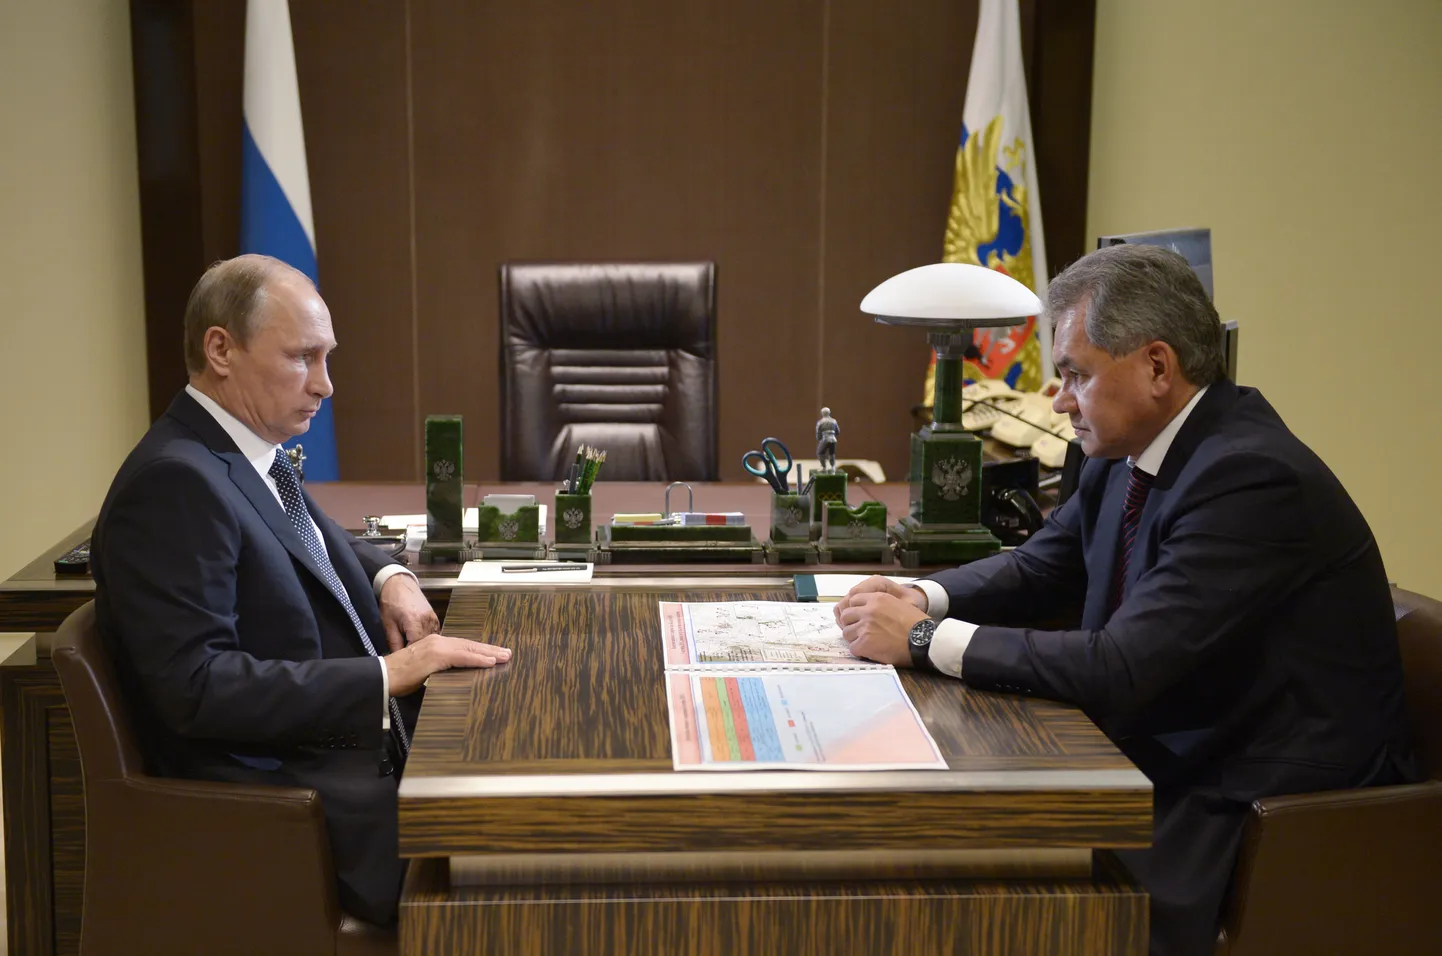 Сергей Шойгу сообщает Владимиру Путину о первом обстреле Сирии корабельными ракетами.